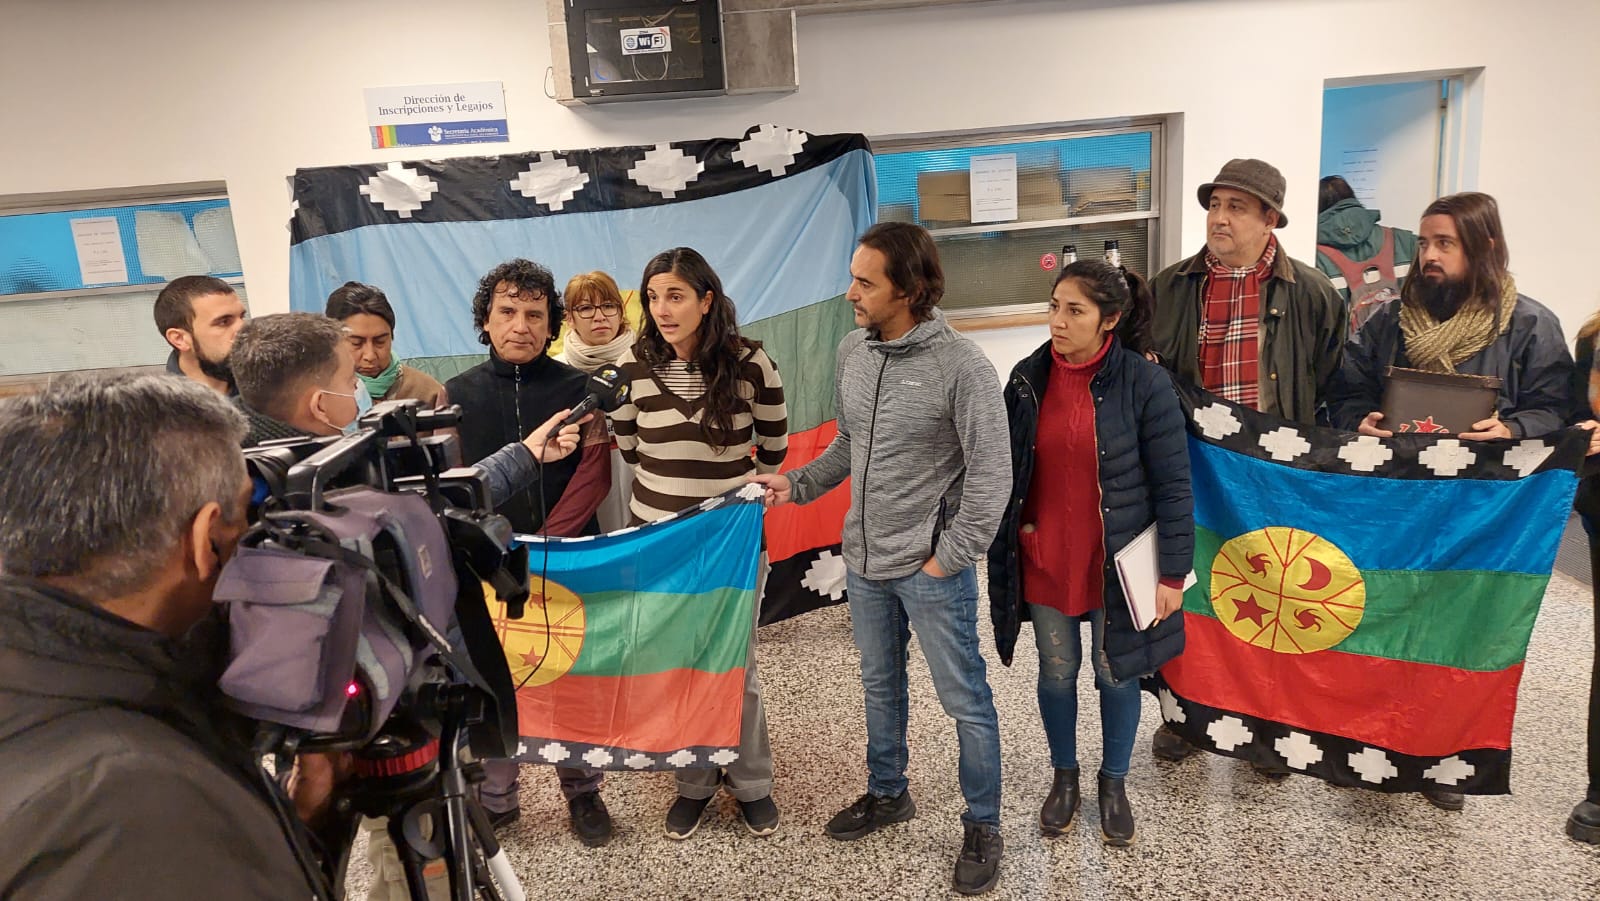 Las organizaciones explicaron que la Universidad adhirió a la celebración del año nuevo mapuche. (Gentileza).-